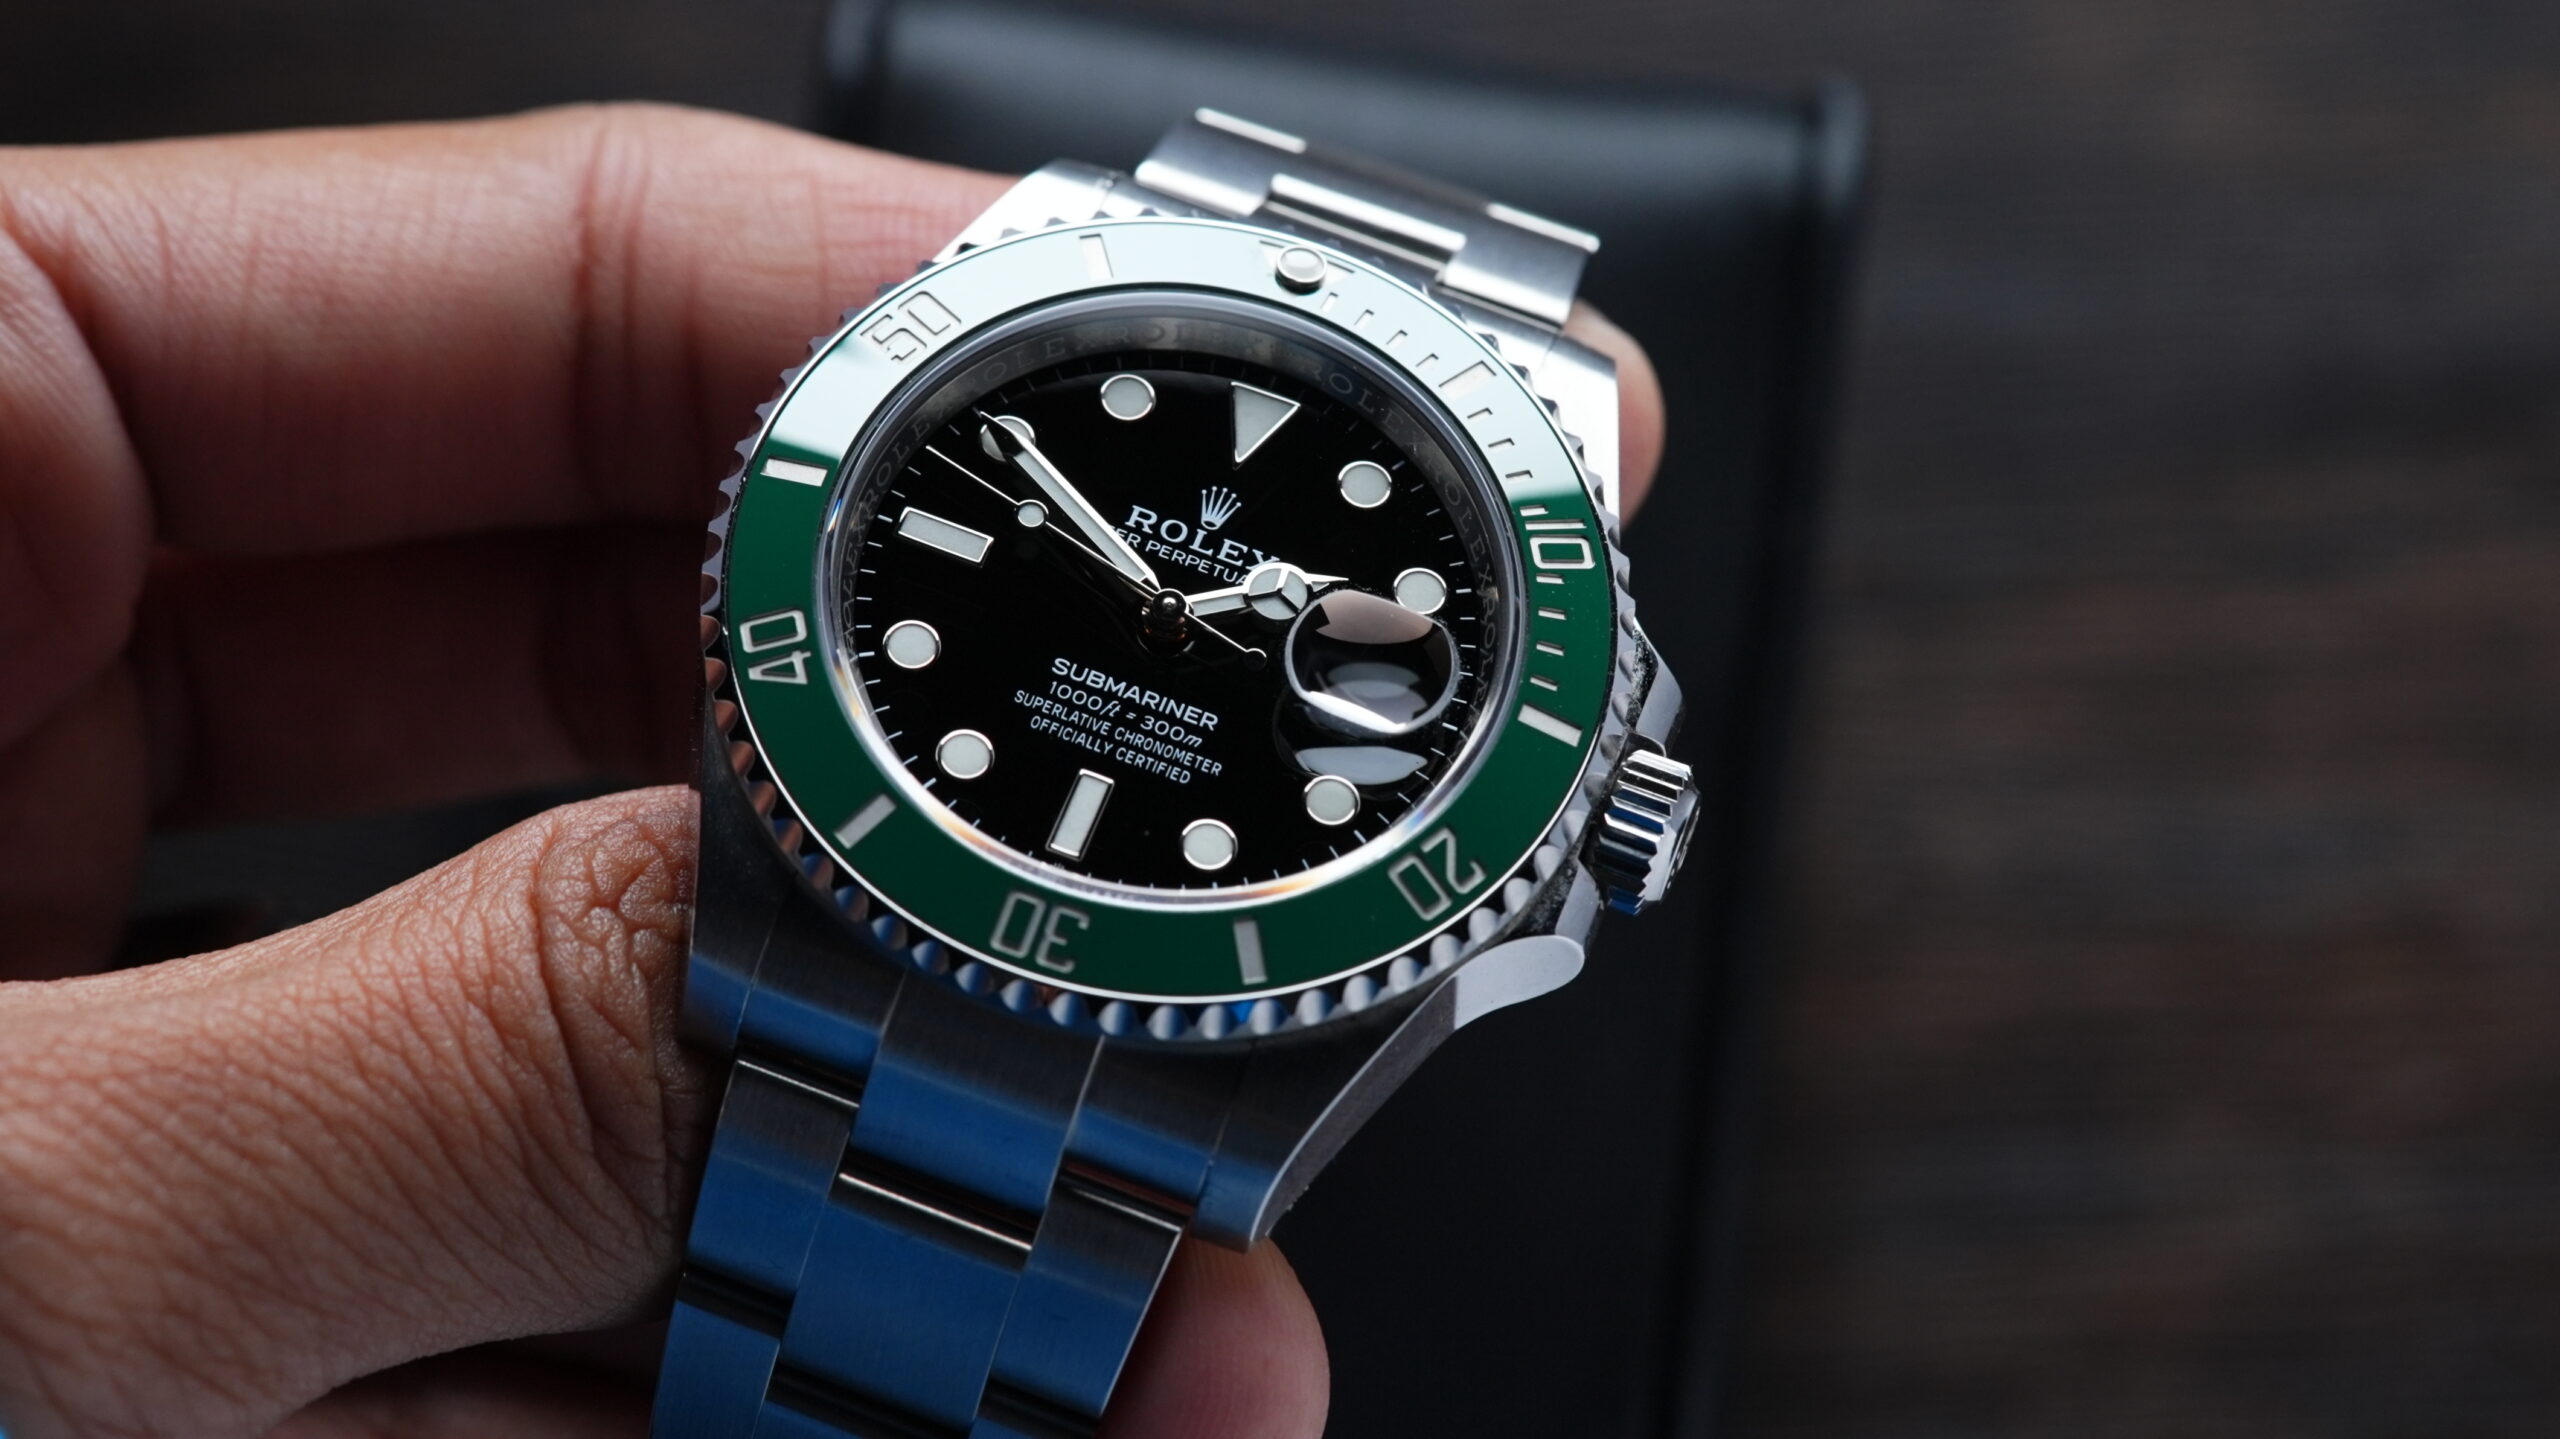 Rolex Steel Submariner Date Watch - The Starbucks - Green Bezel - Blac